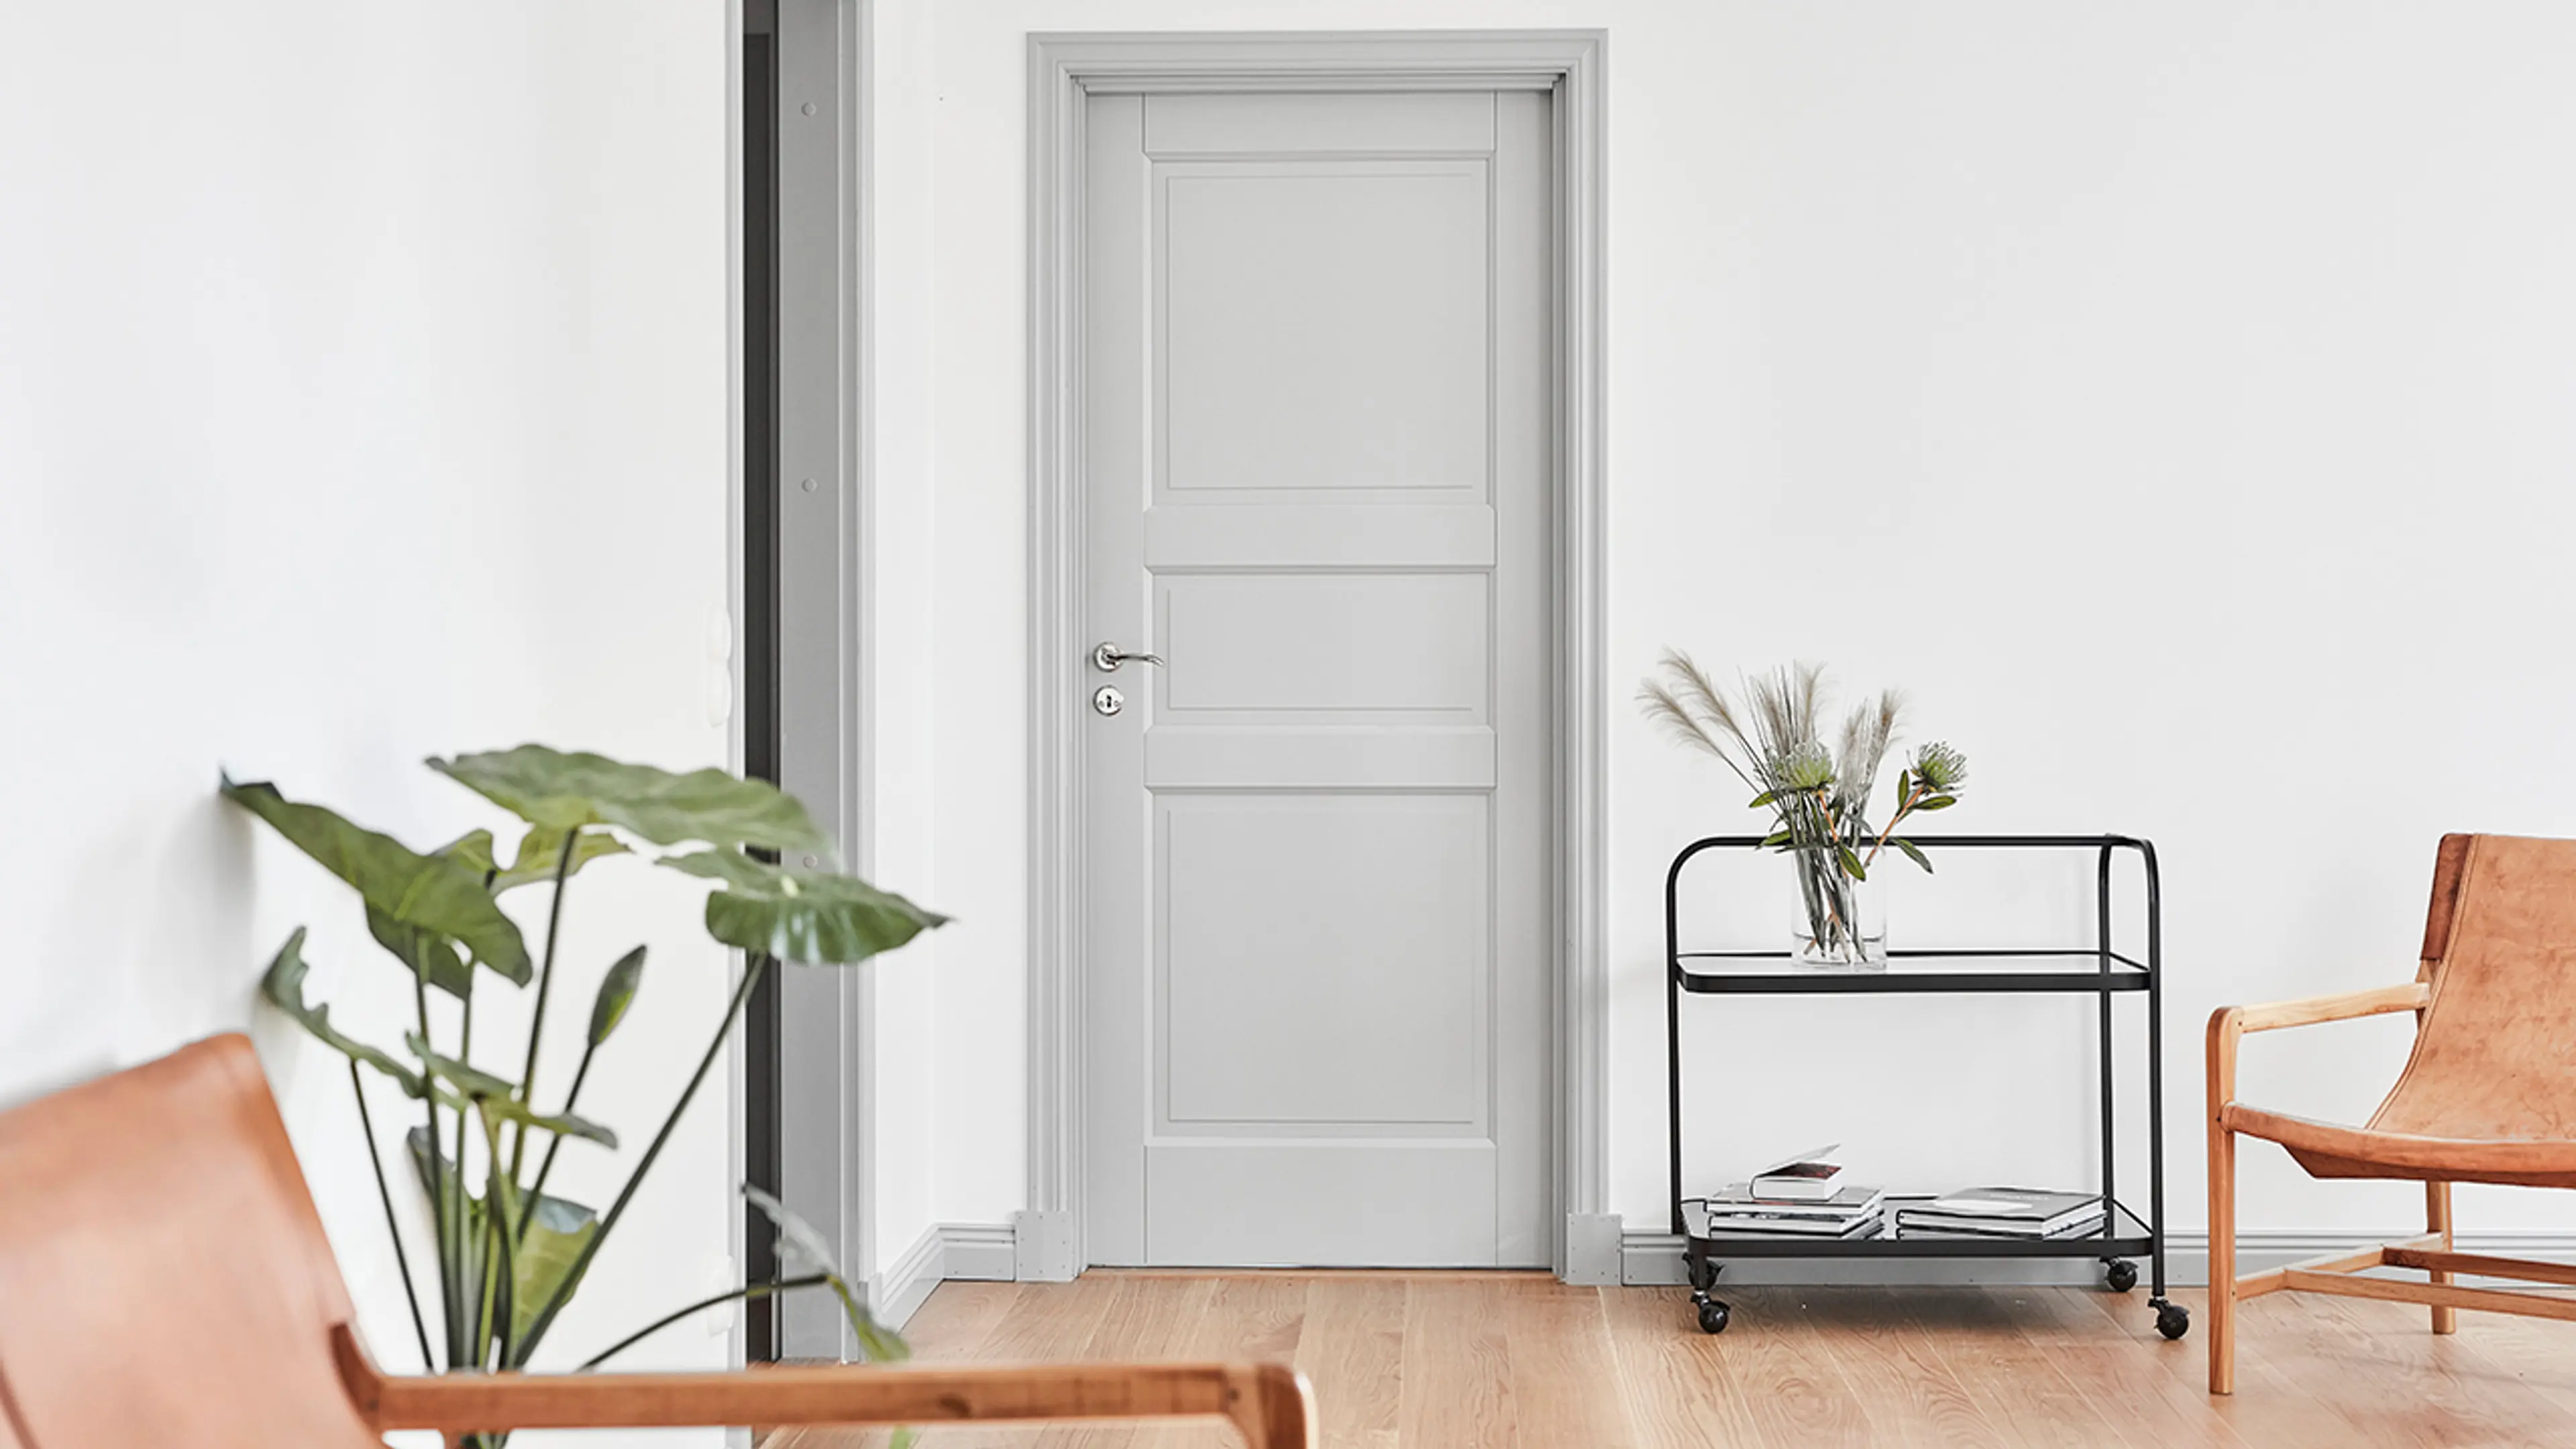 Lys grå innerdør med profil i stue med skinnstoler, grønne planter og trillebord.